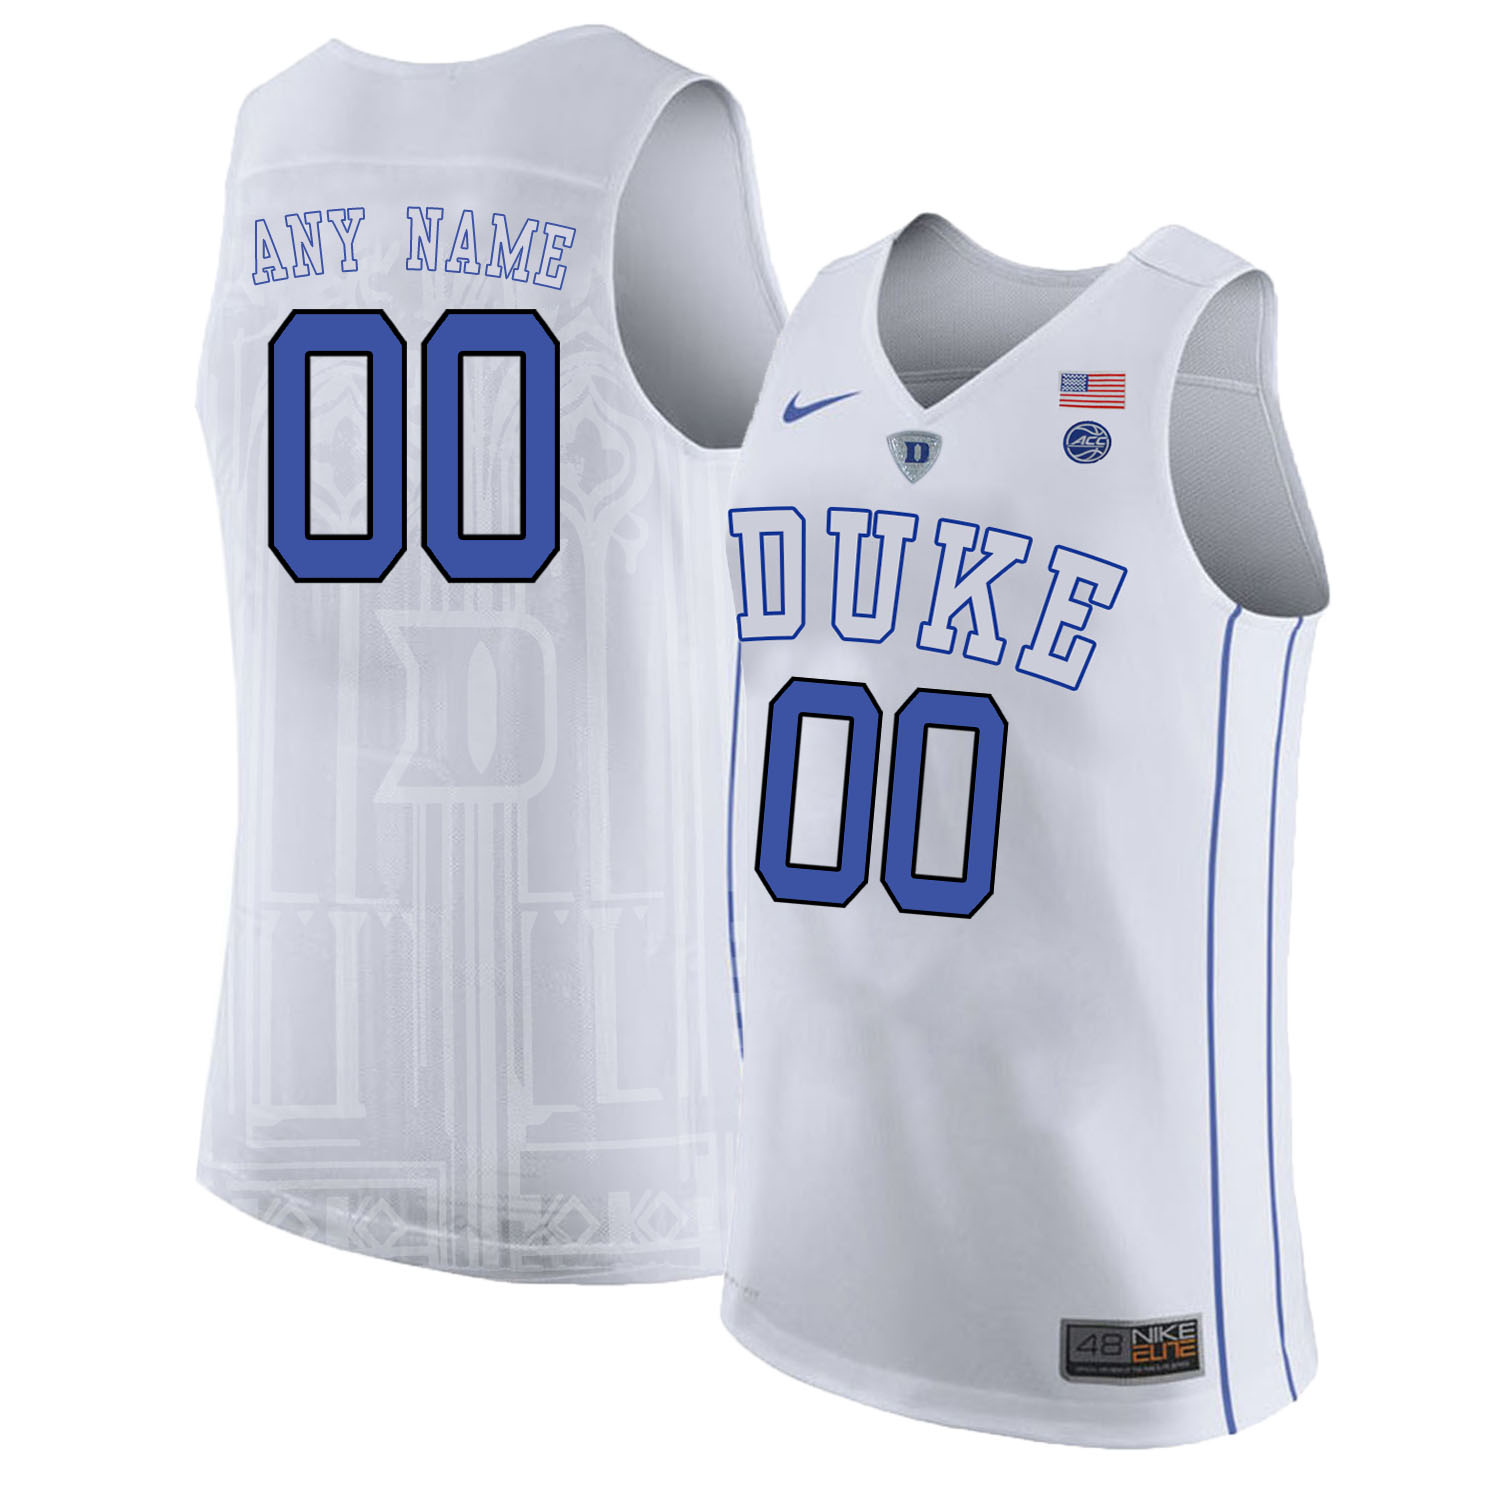 Duke Blue Devils Men's Customized White Nike College Basketball Jersey